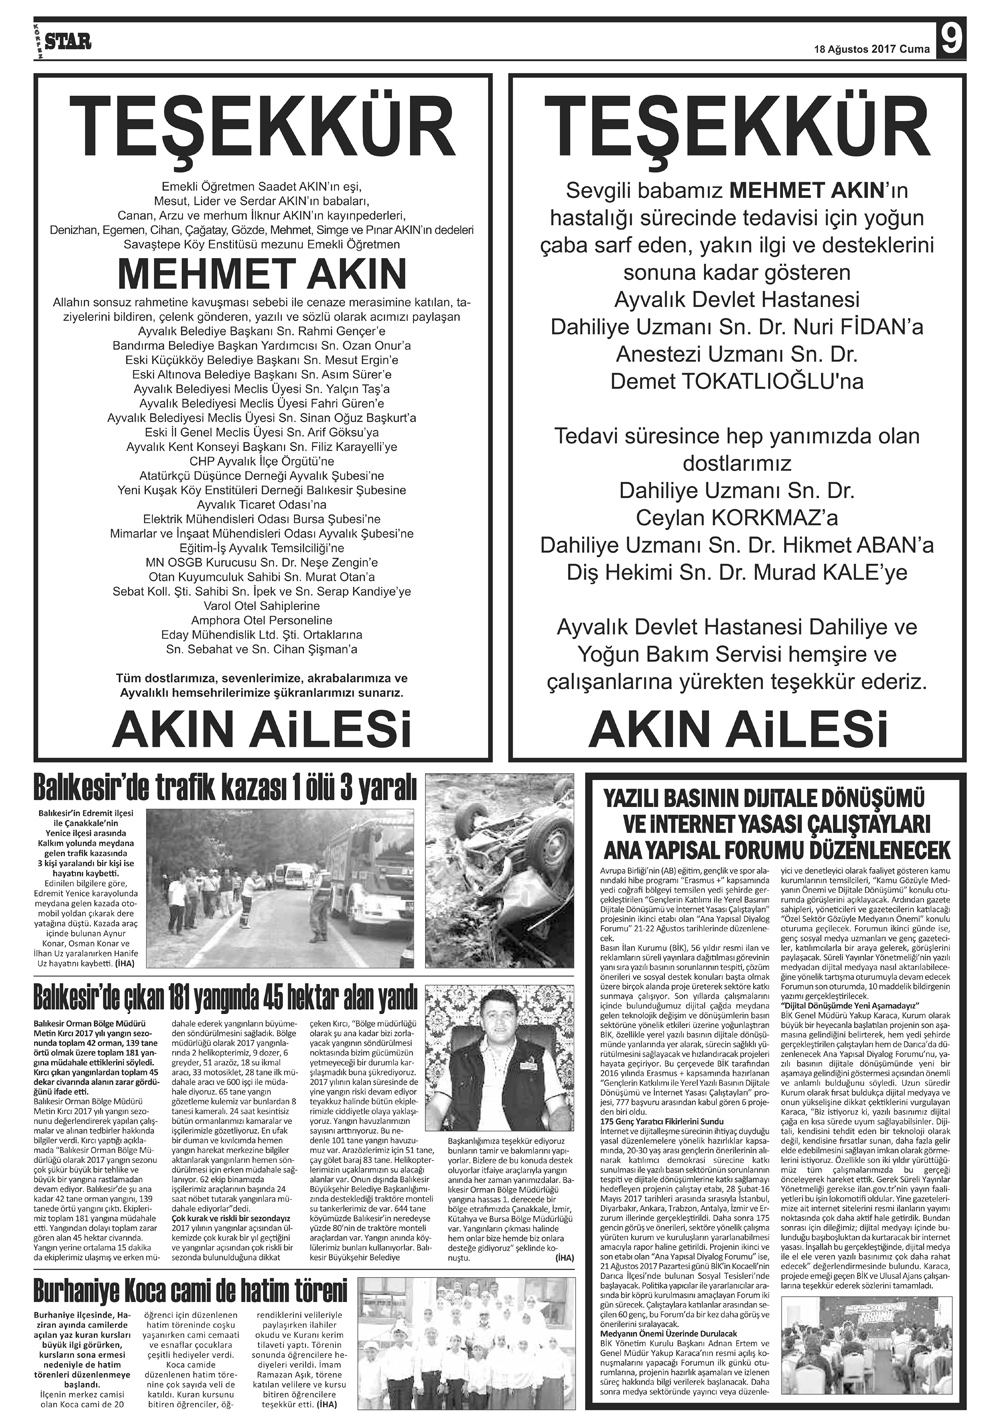 18082017-tarihli-gazetemiz-8417-08-18081545.jpg